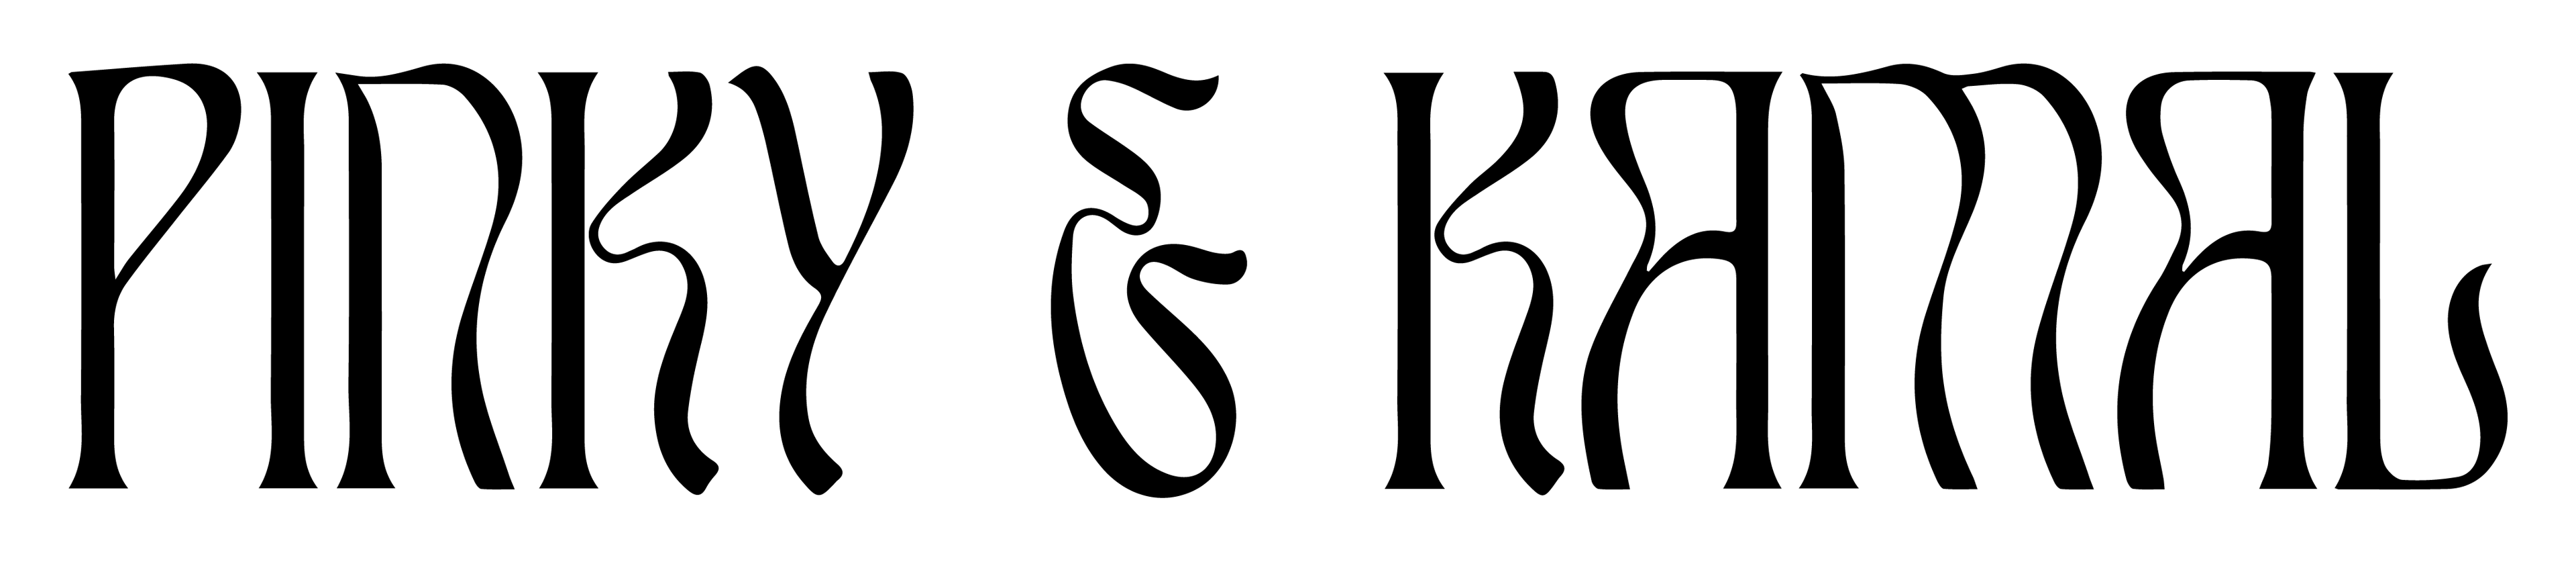 pinky-and-kamal logo